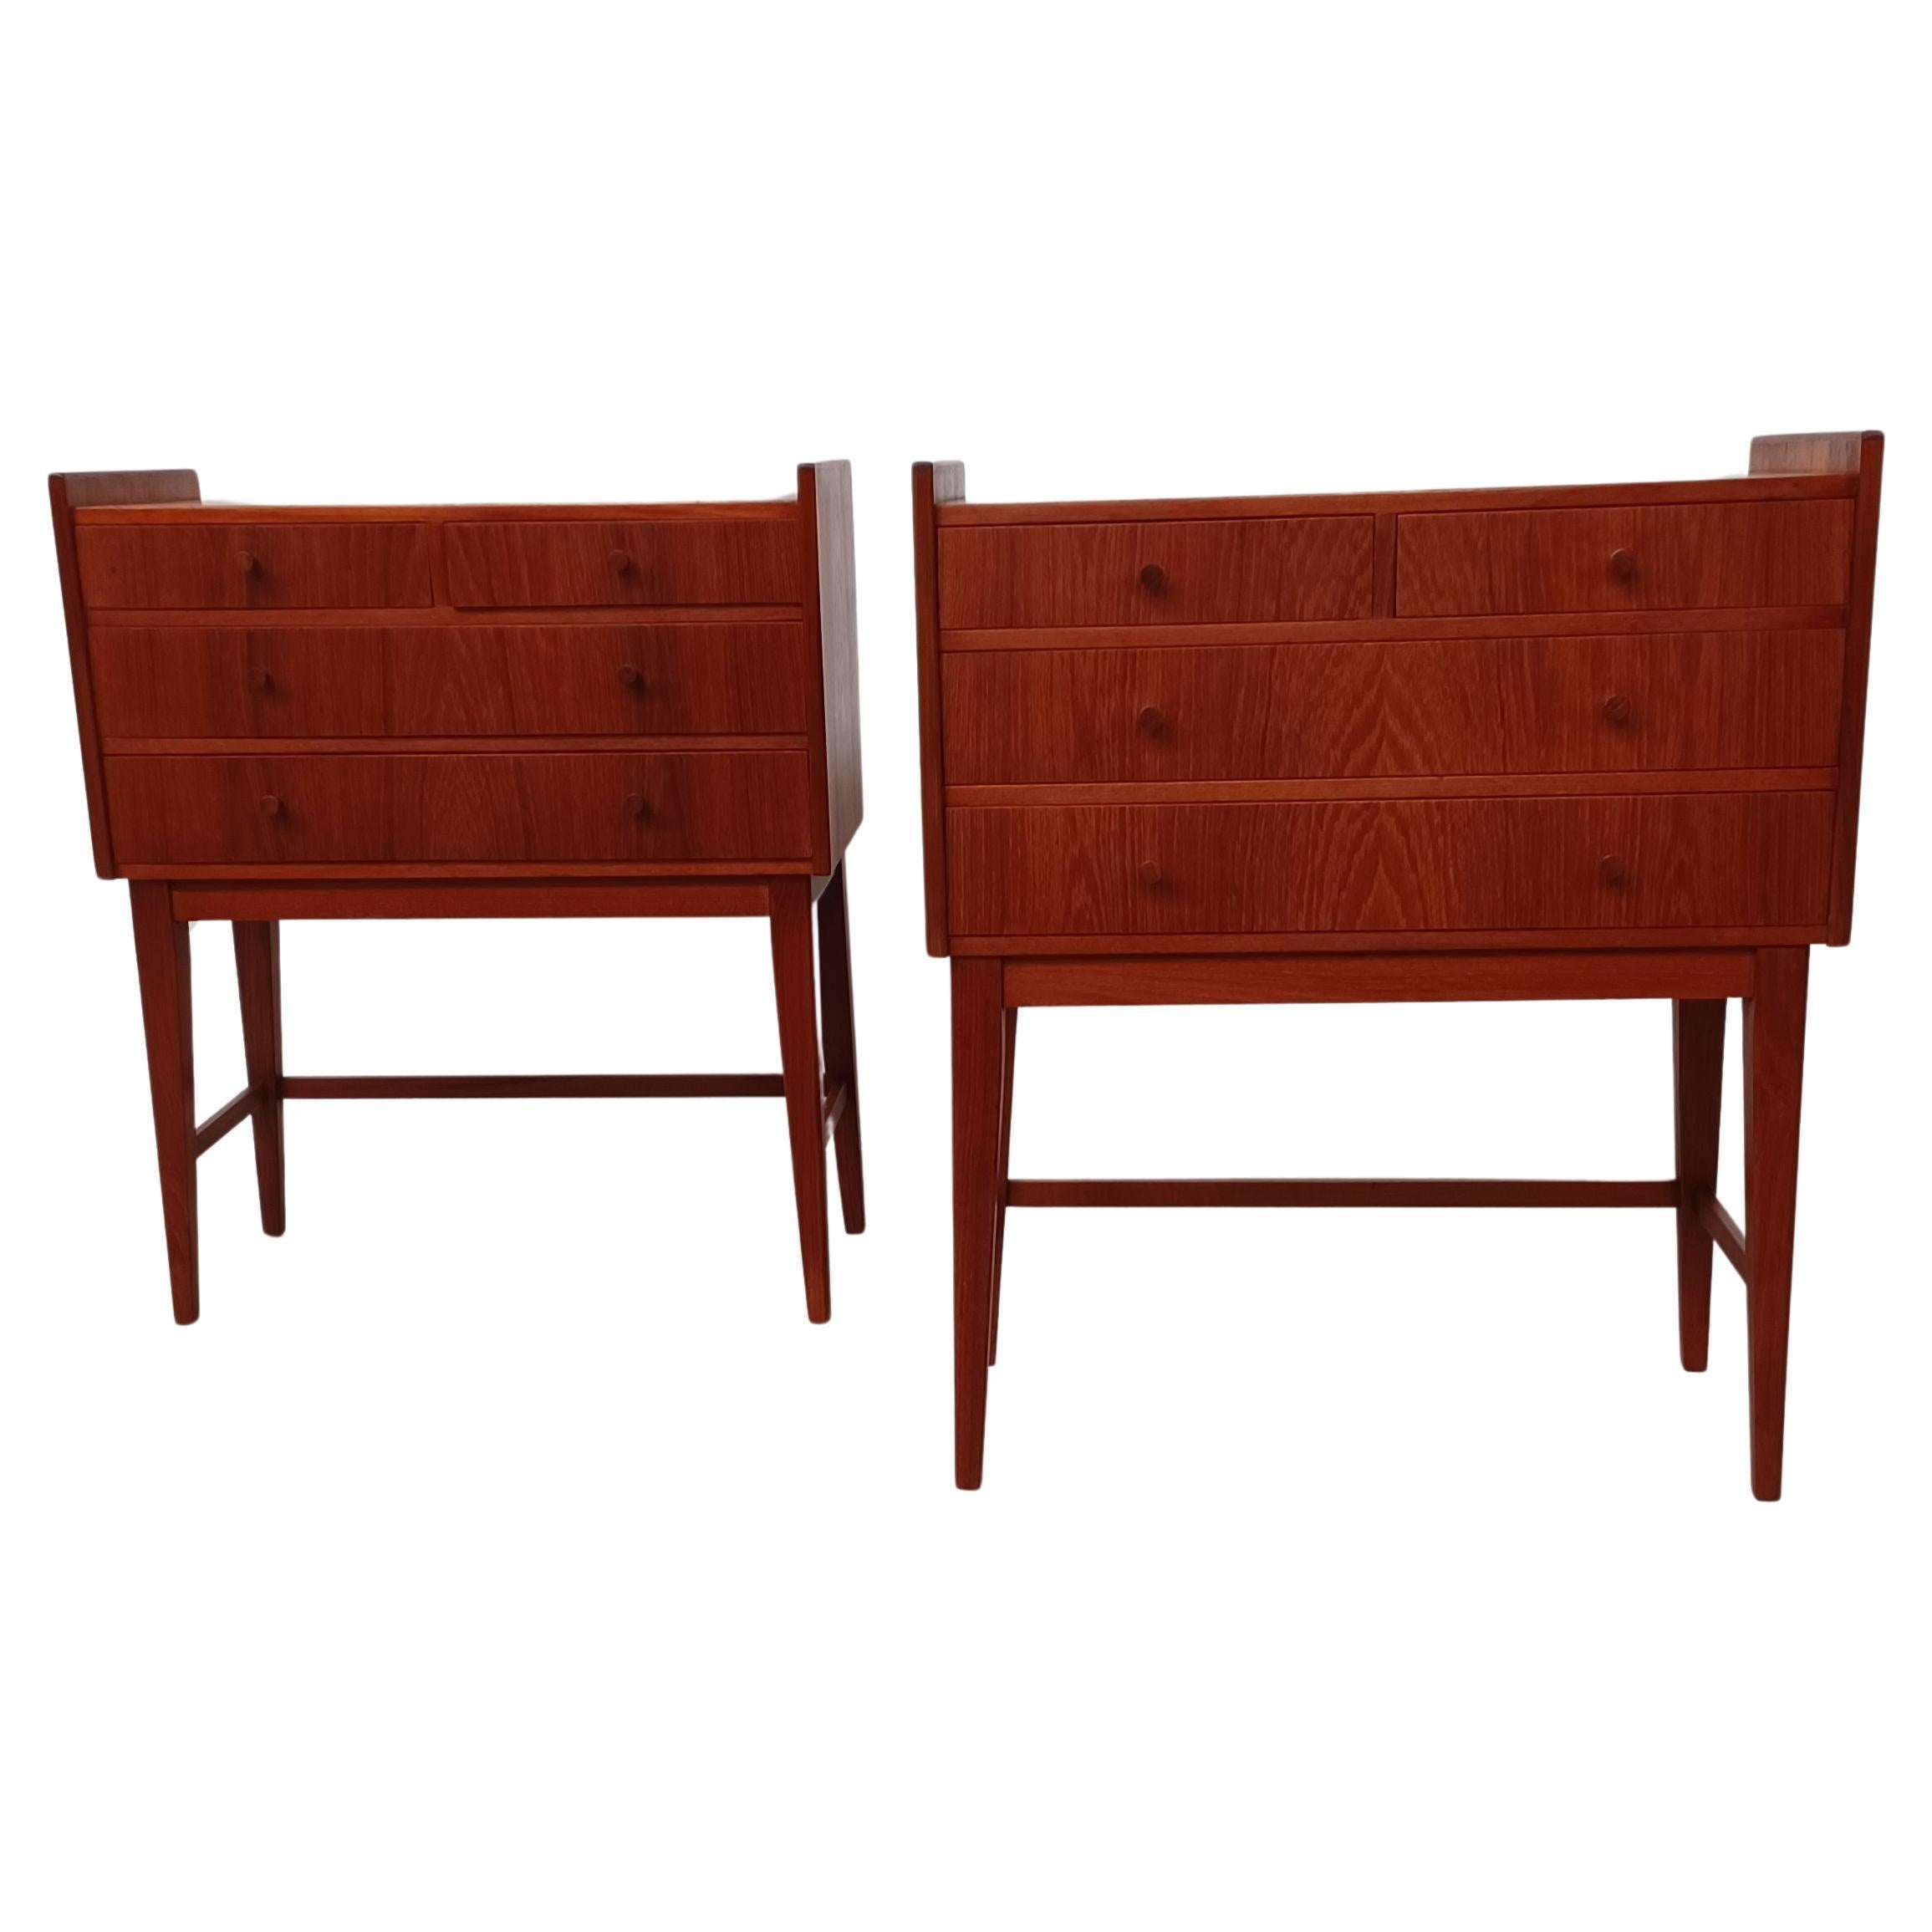 1960s Set of Two Small Fully Restored and Refinished Danish Teak Dressers (Ensemble de deux petites commodes en teck danois entièrement restaurées et remises à neuf) 